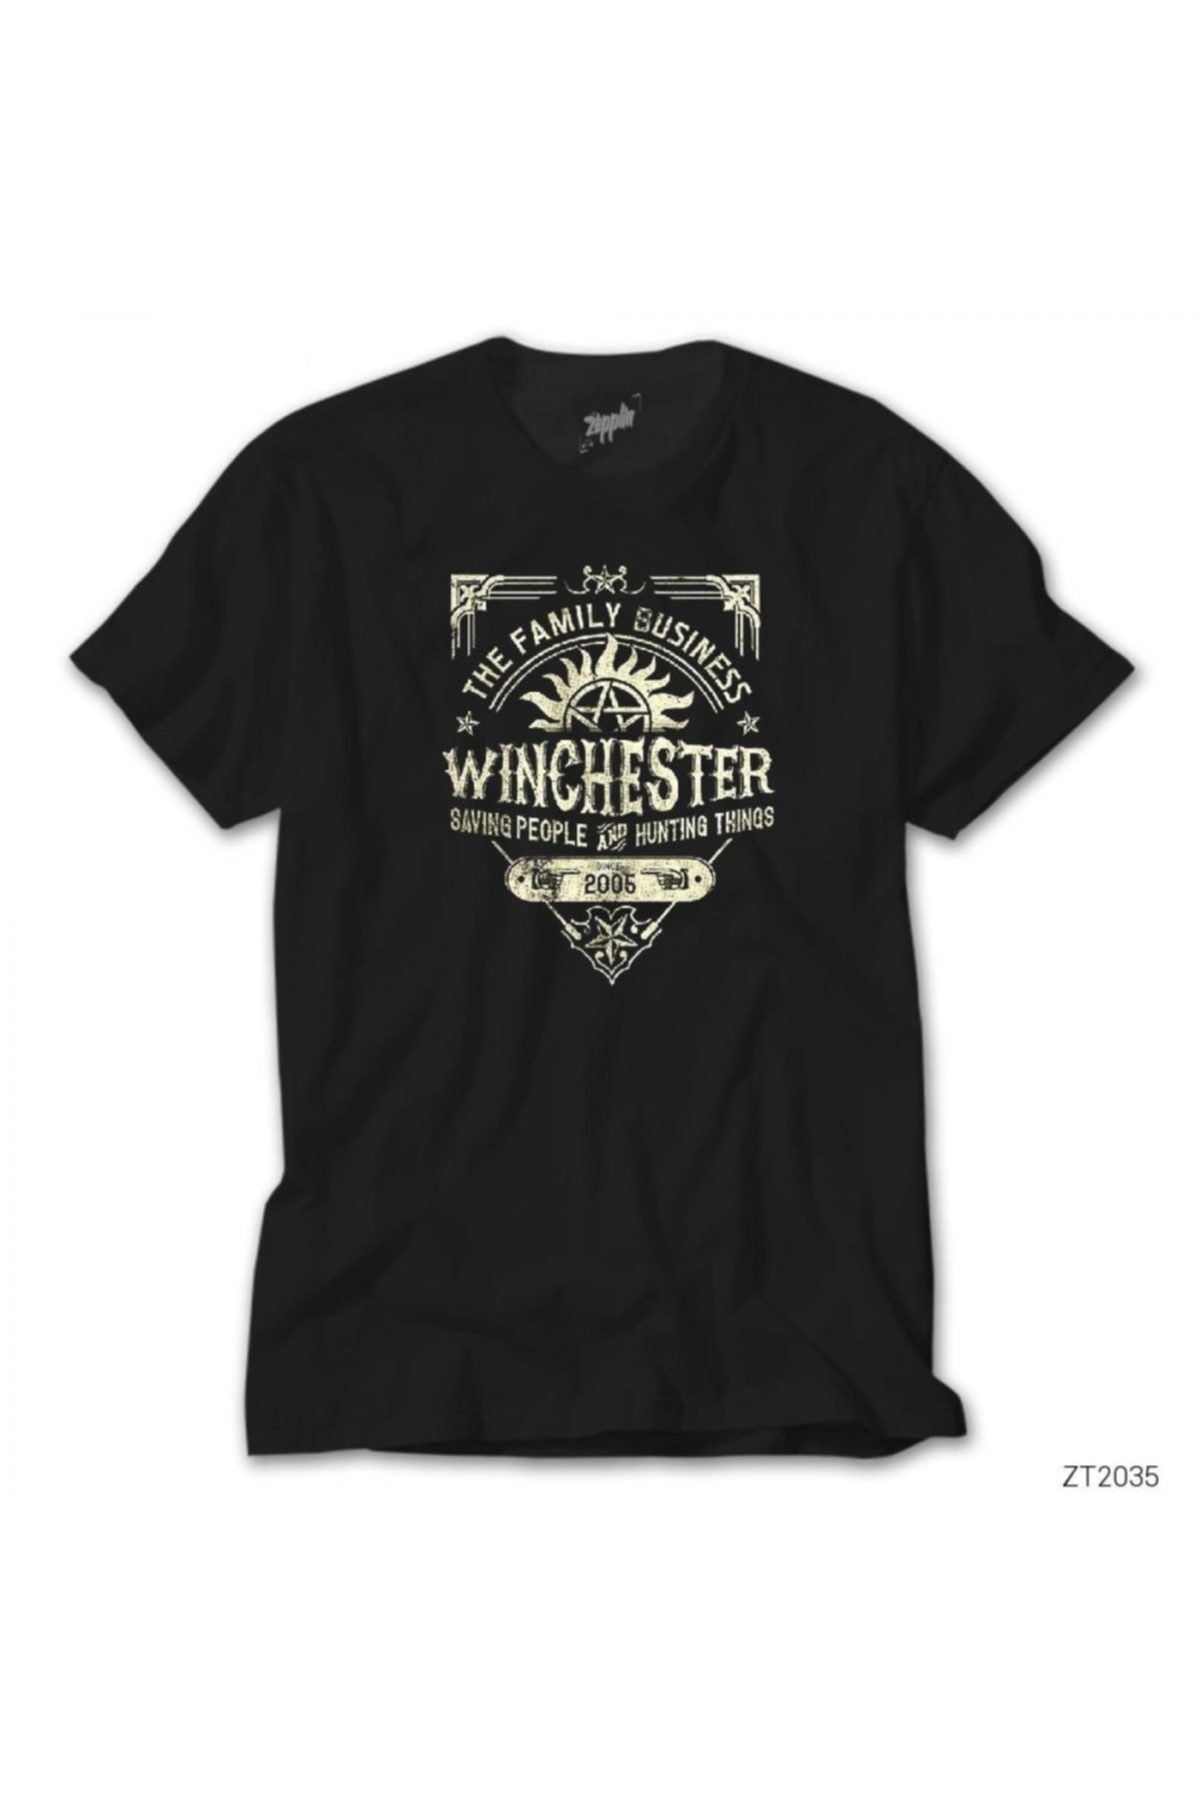 Z zepplin Supernatural A Very Winchester Siyah Tişört